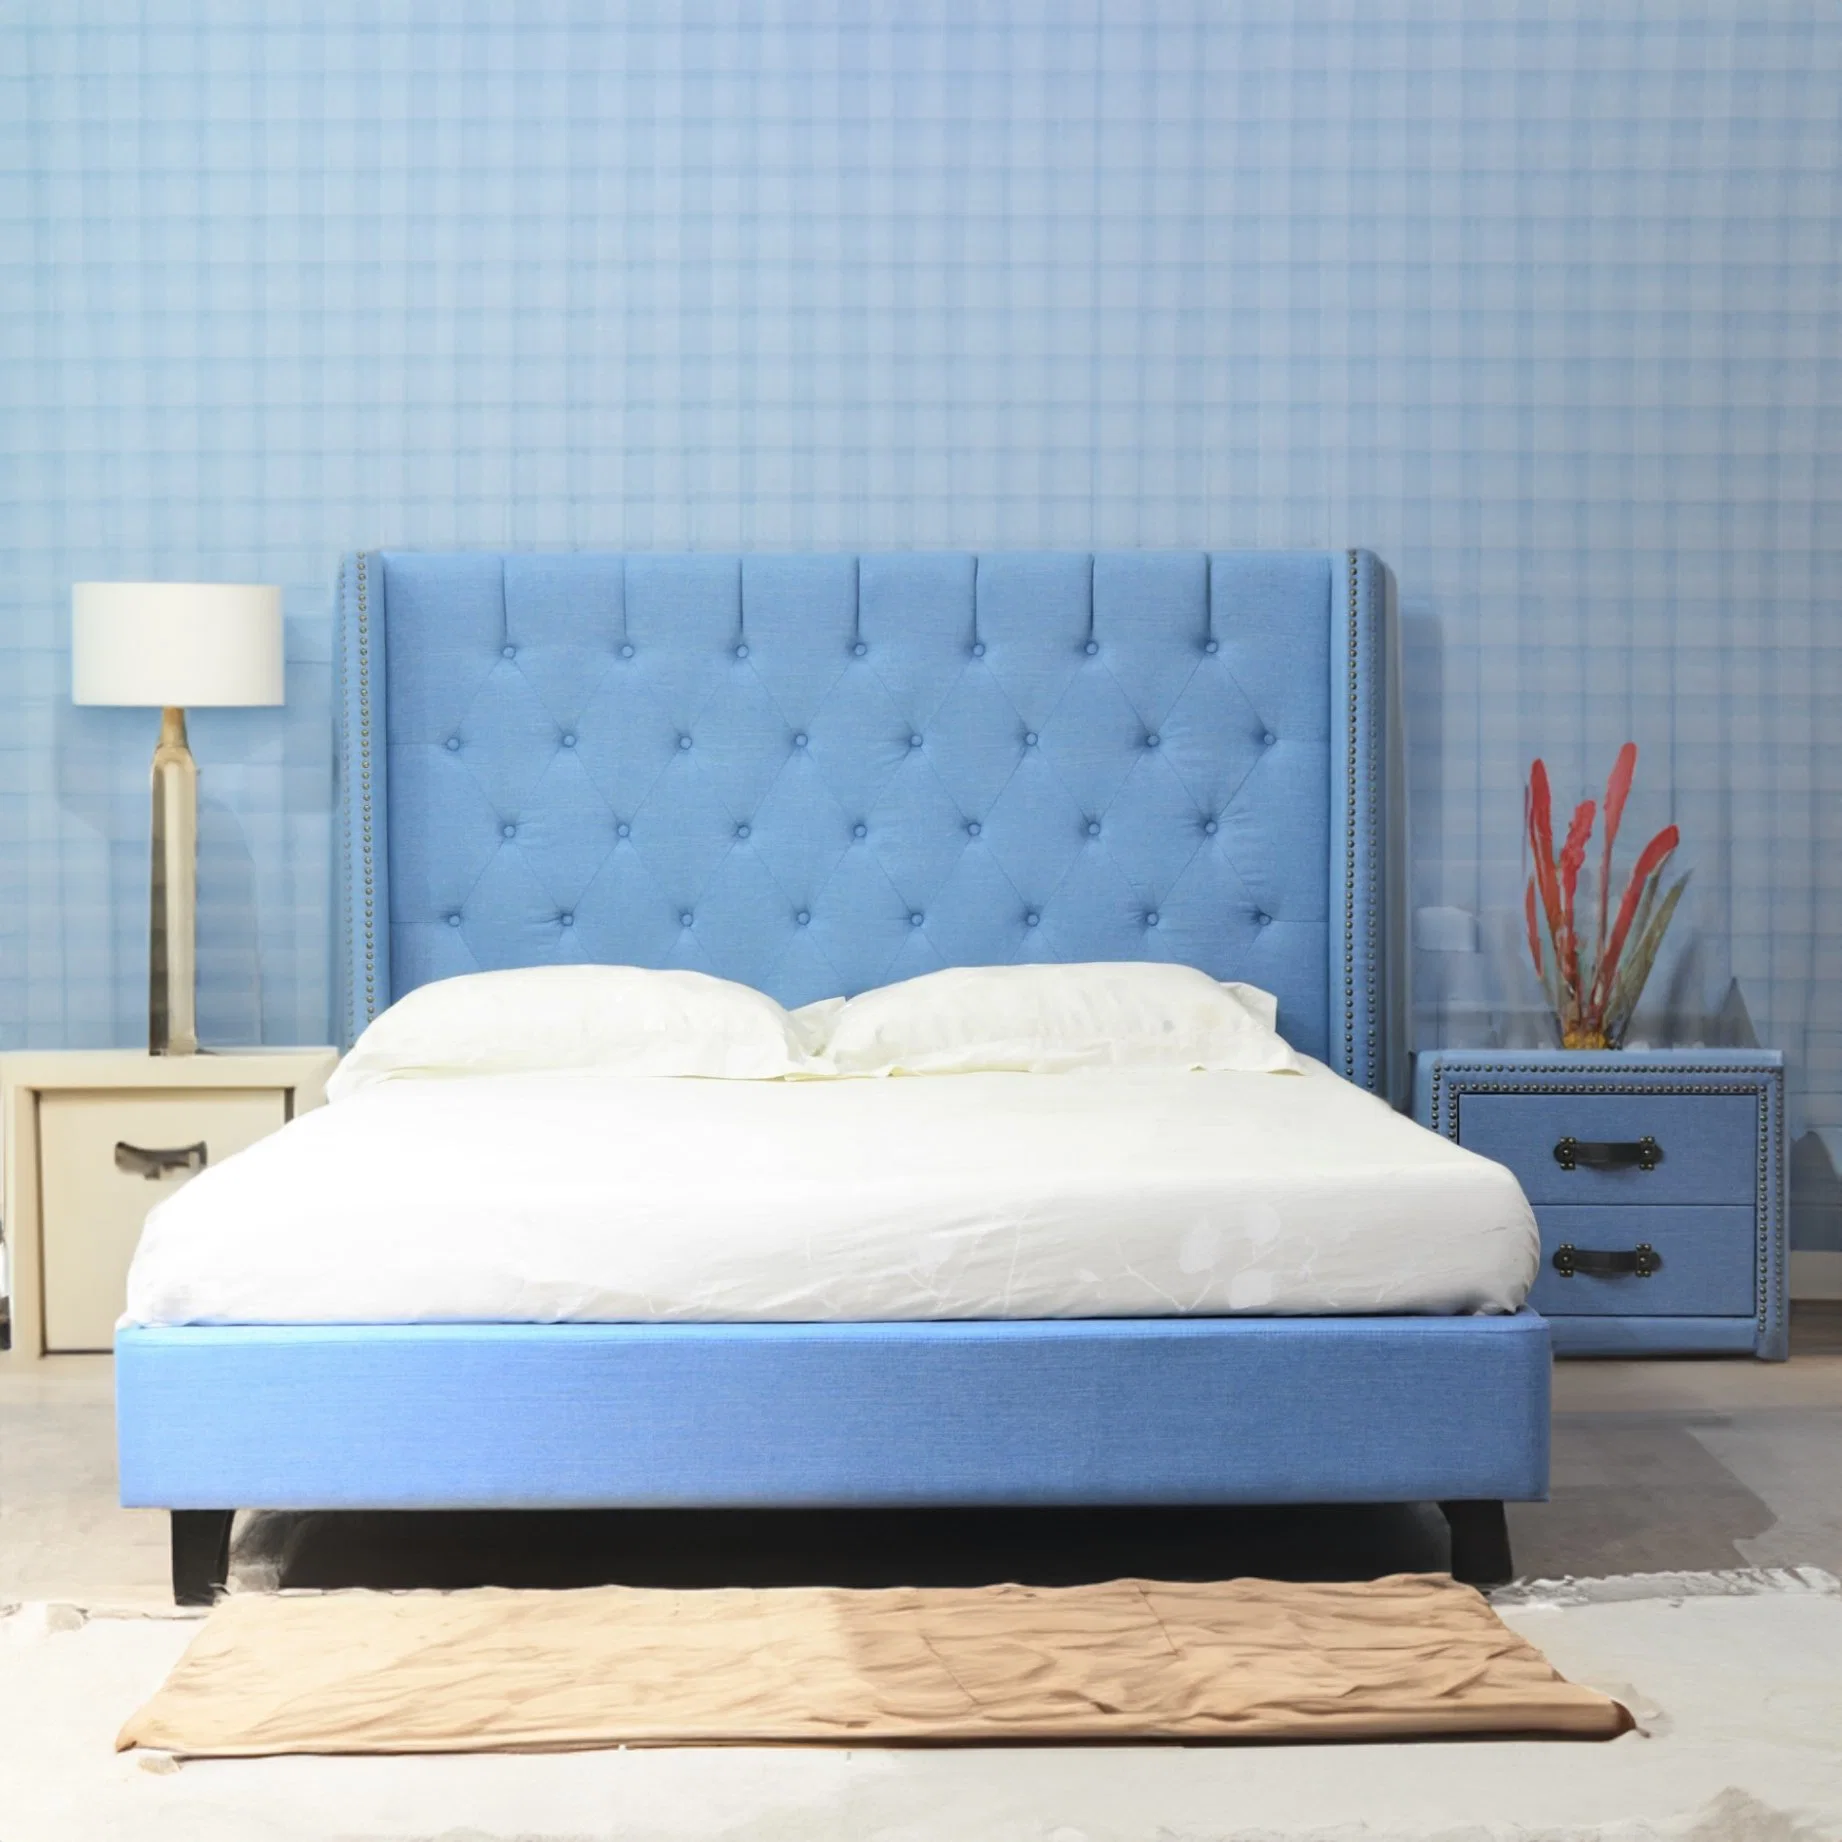 Huayang SGS Certified Factory Hersteller Matratze Bett modernes Schlafzimmer Bett Sofa-Bett King-Size-Bett OEM maßgeschneiderte Kindermöbel Kinder Bett